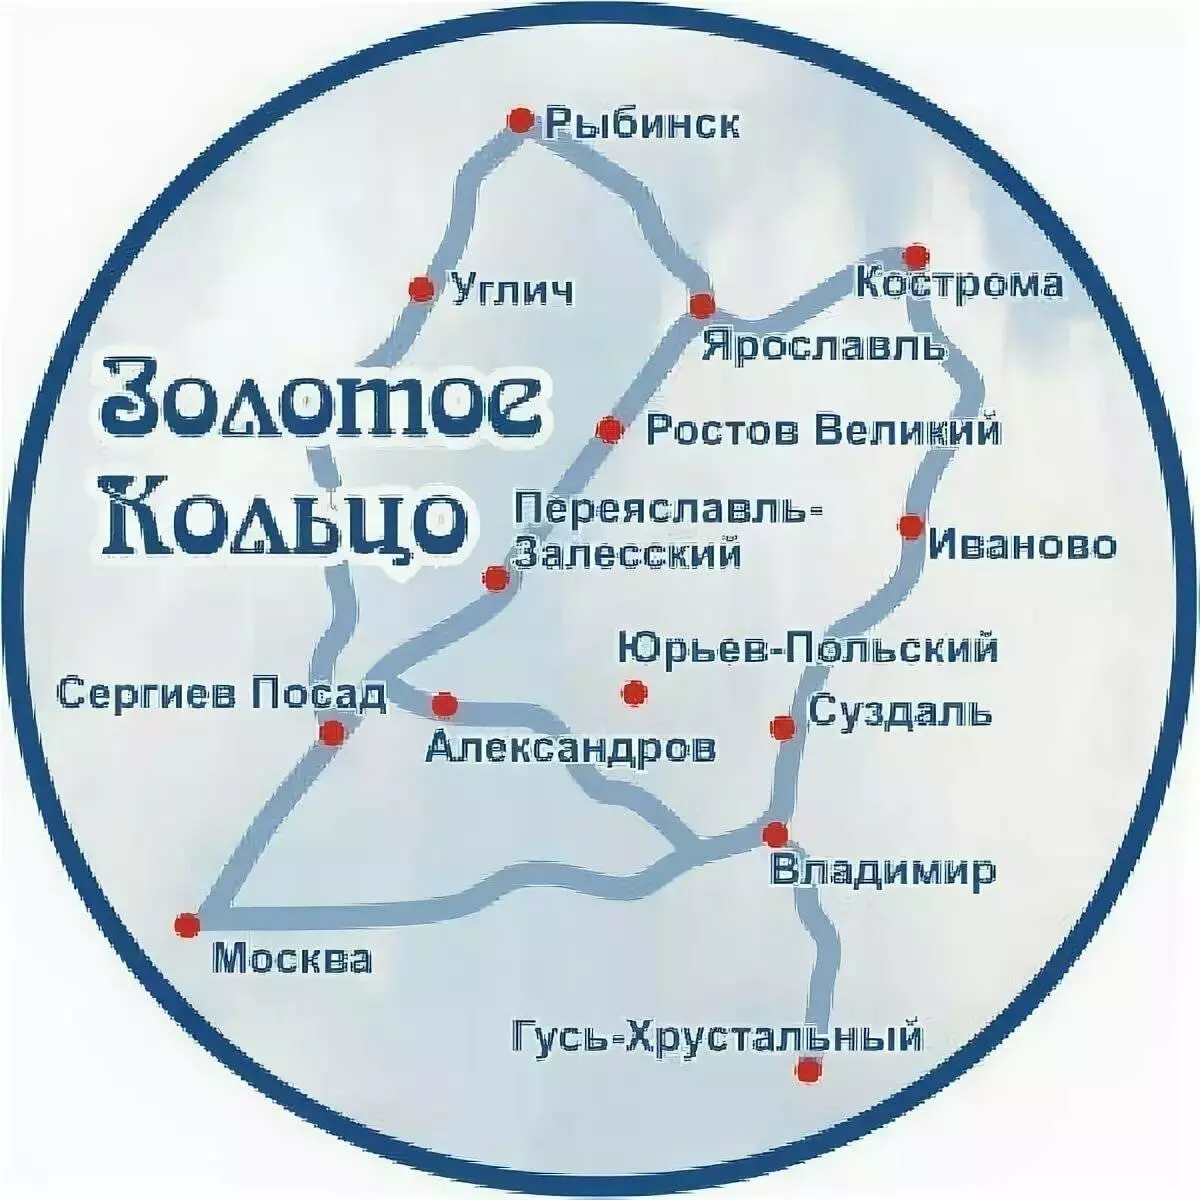 Туристический маршрут золотое кольцо россии